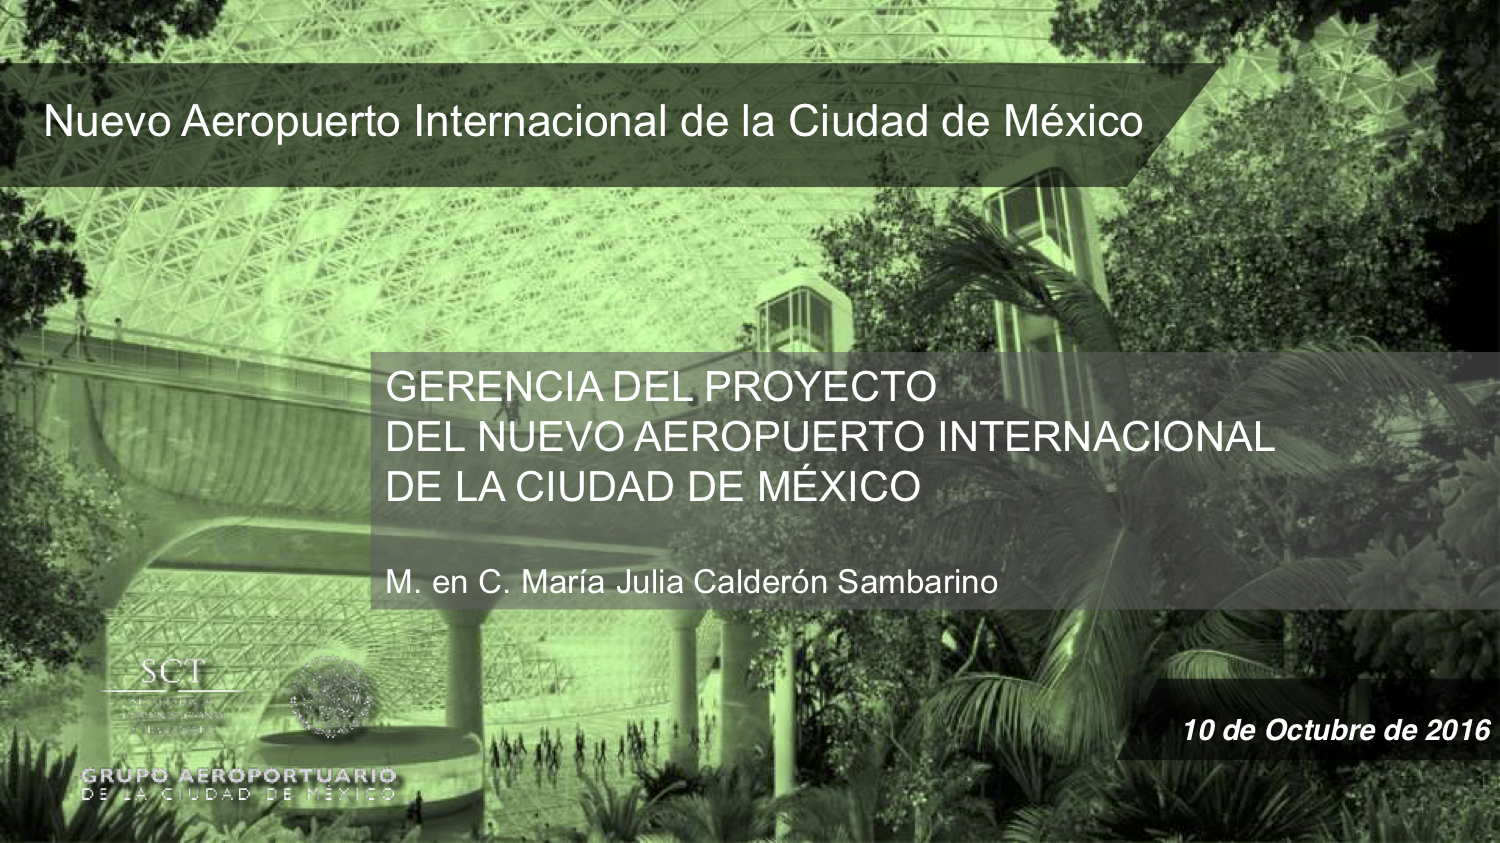 Gerencia del proyecto del Nuevo Aeropuerto Internacional de La Ciudad de México